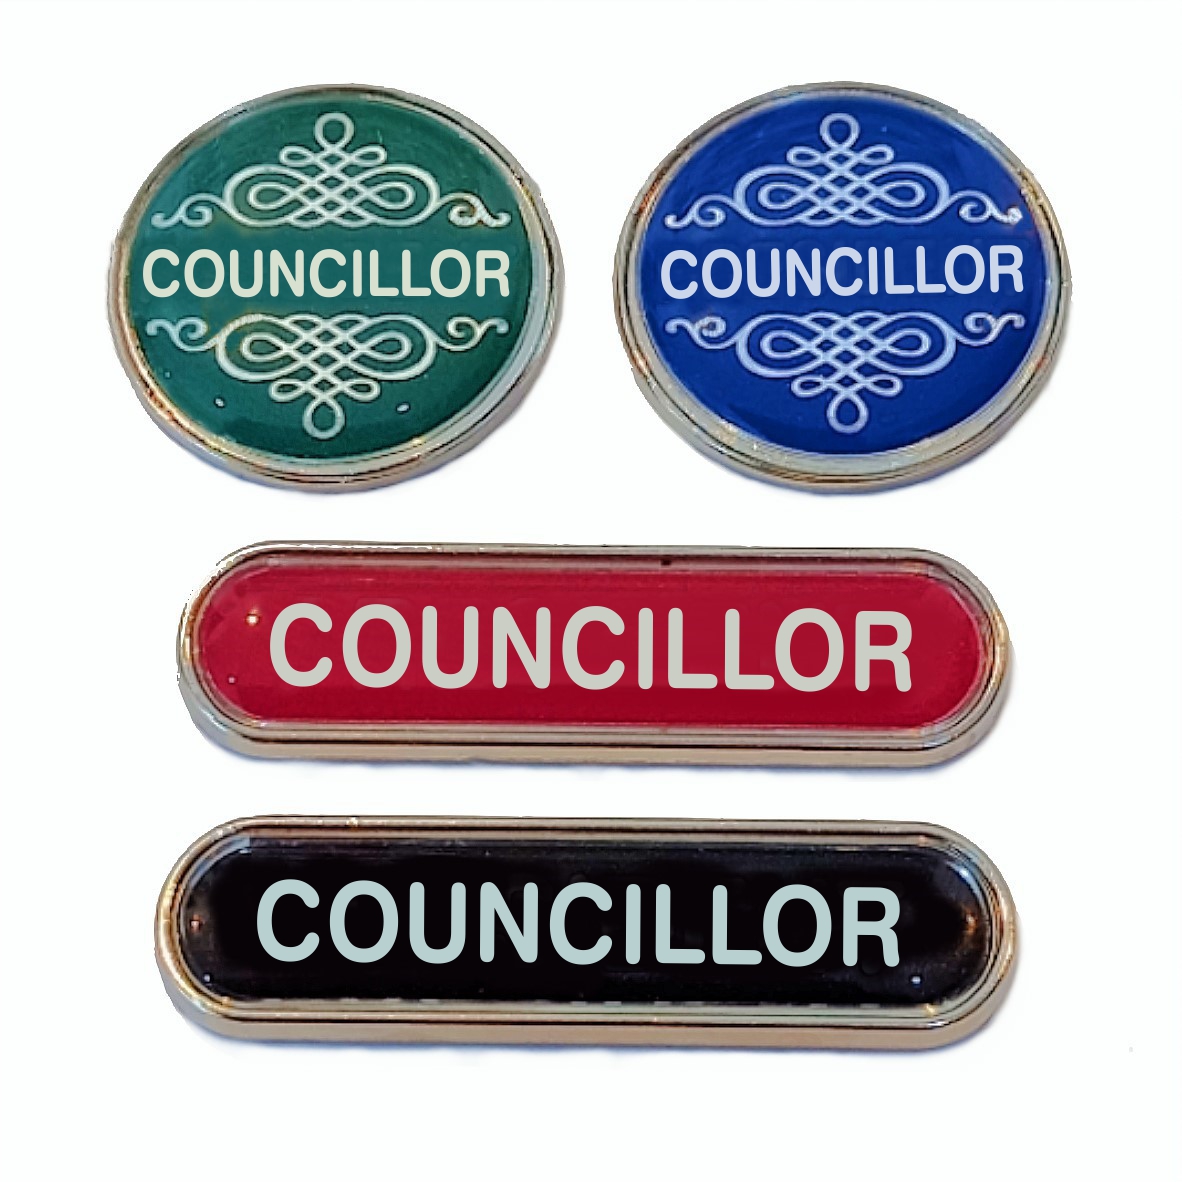 COUNCILLOR badge